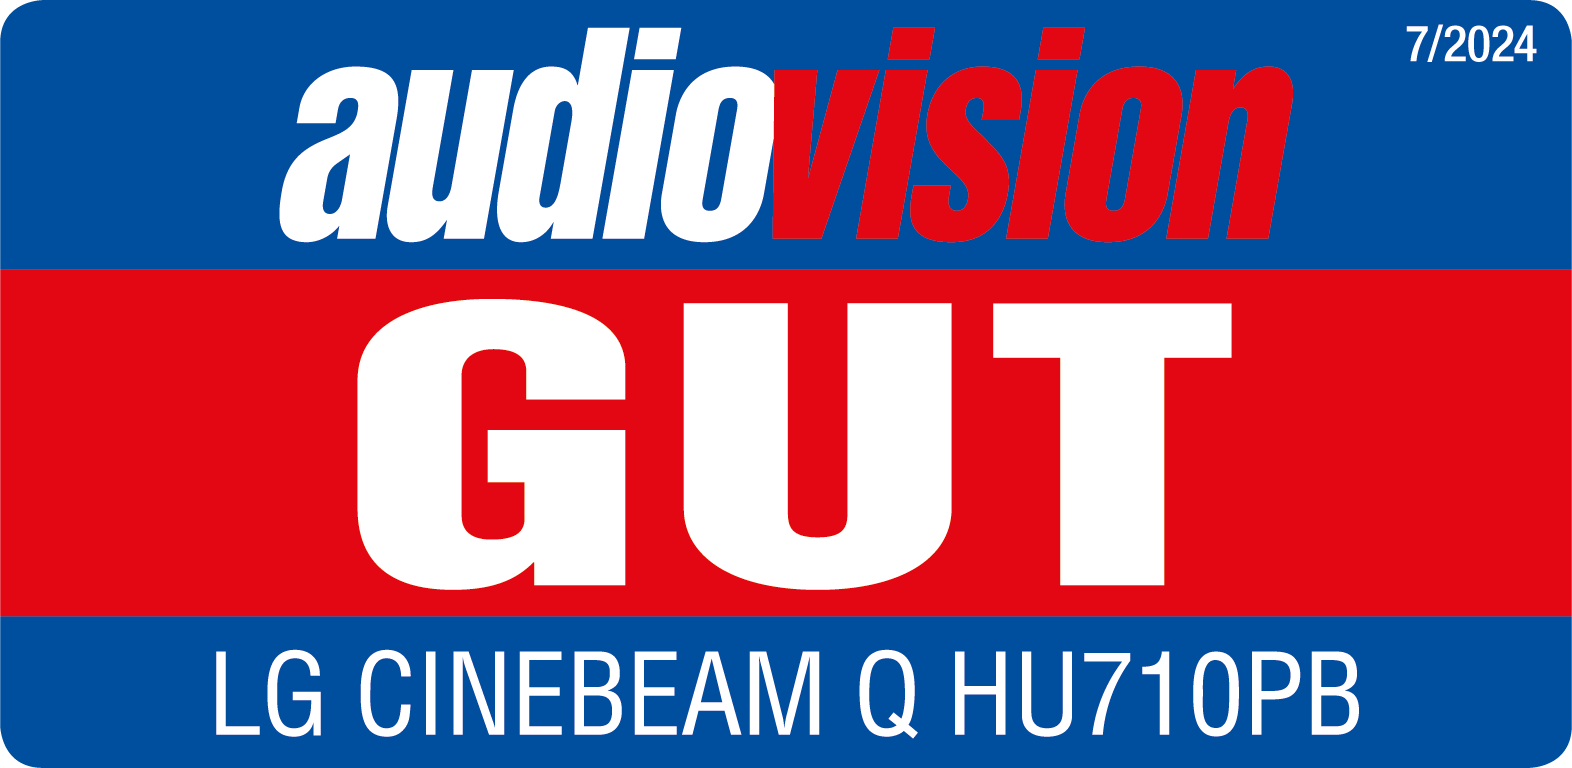 Audiovision CineBeam Q